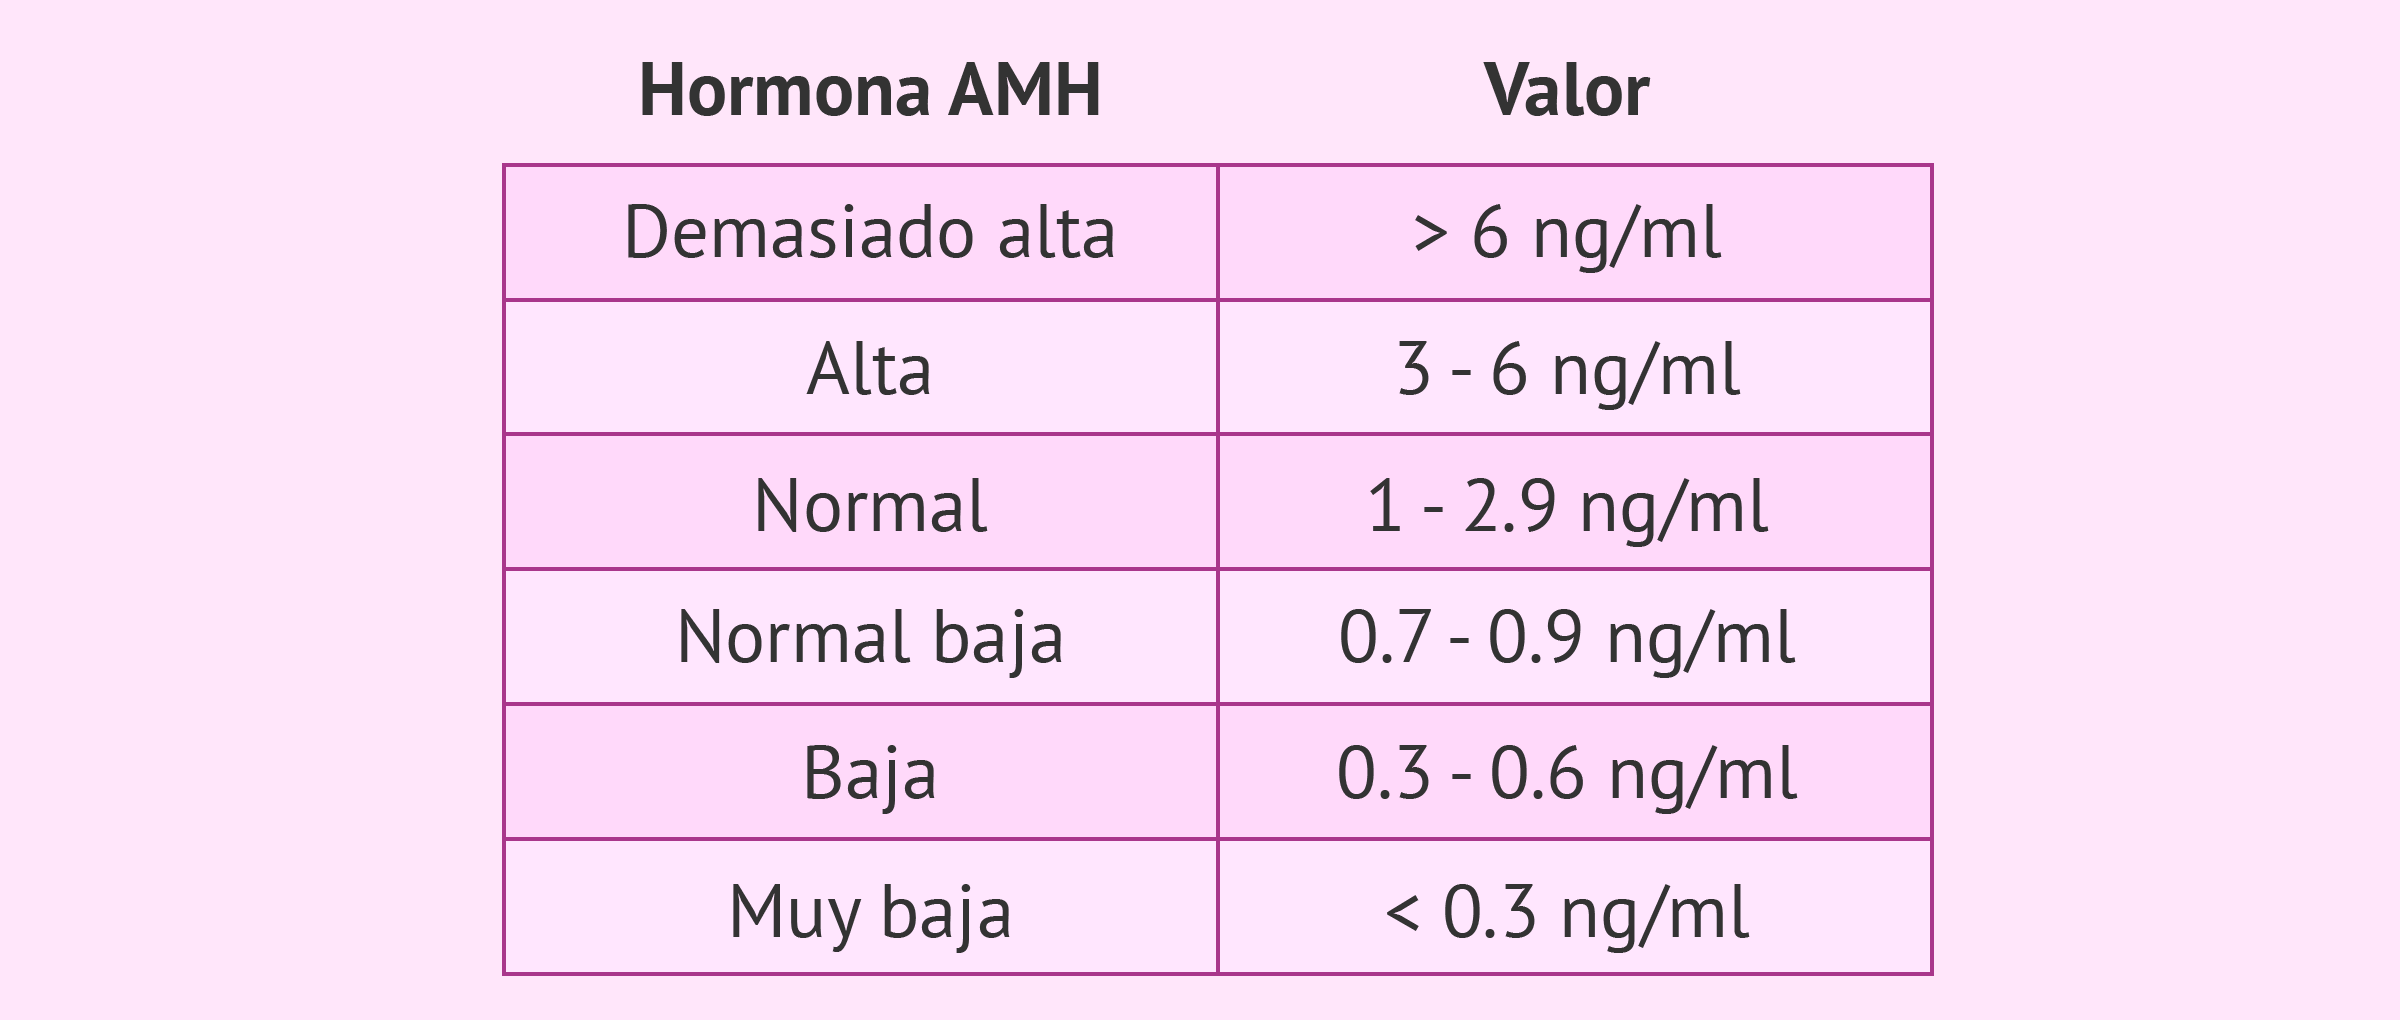 La hormona antimülleriana: utilidad para estudiar la fertilidad